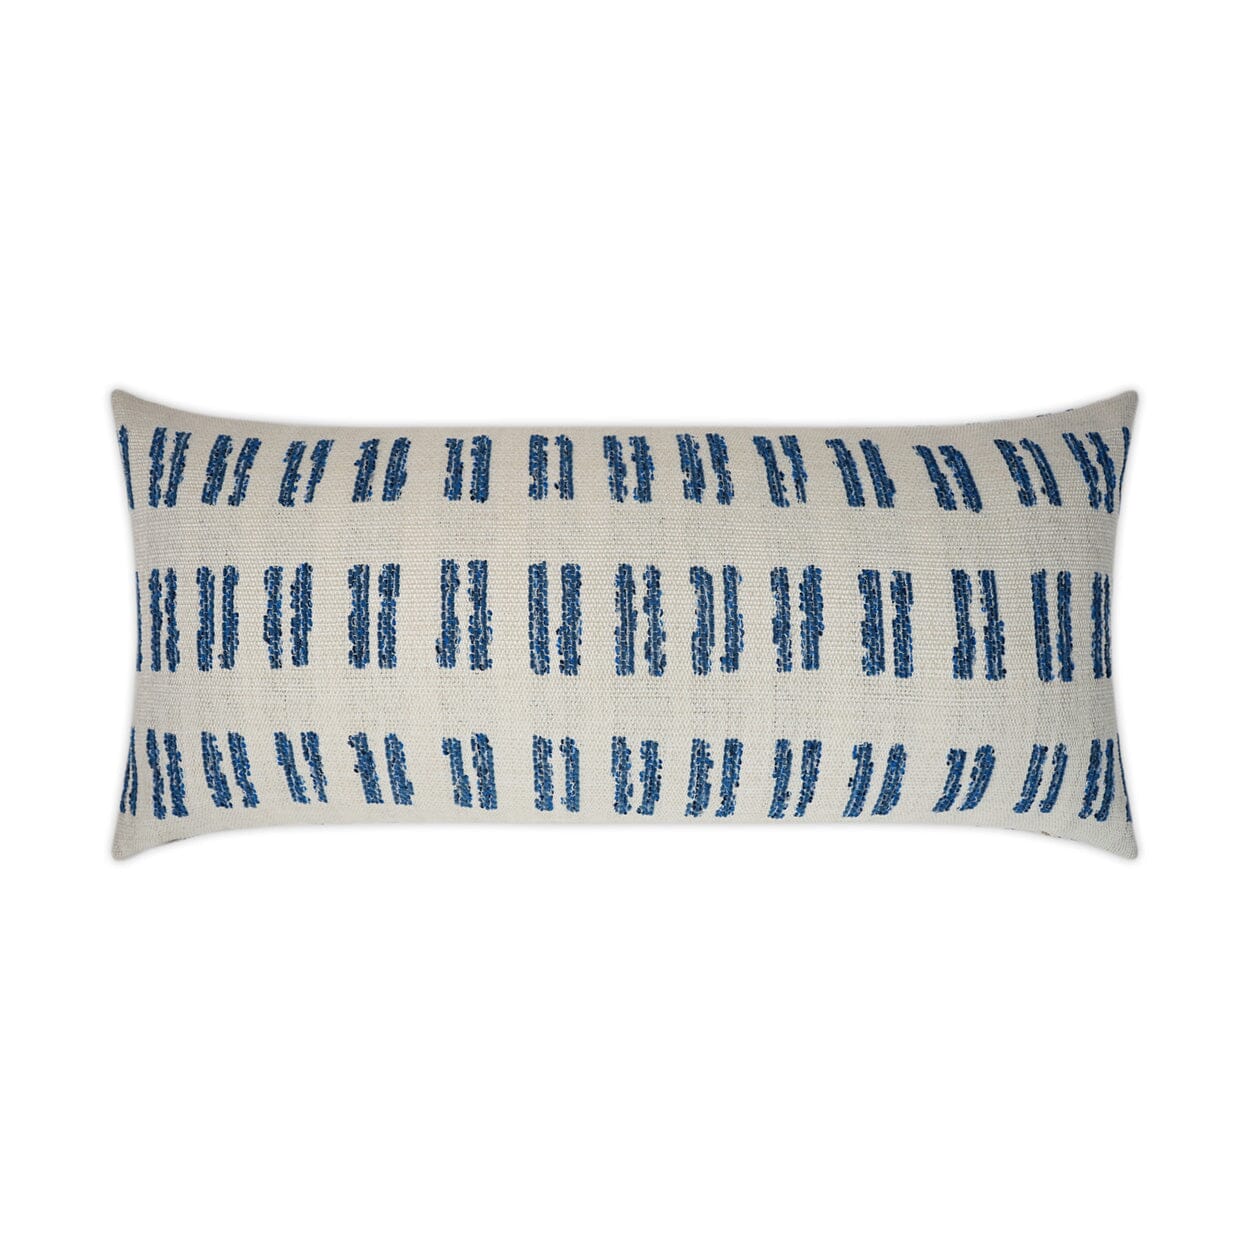 D.V. Kap 12" x 24" Outdoor Lumbar Pillow | Saybrook Blue Pillows D.V Kap Outdoor